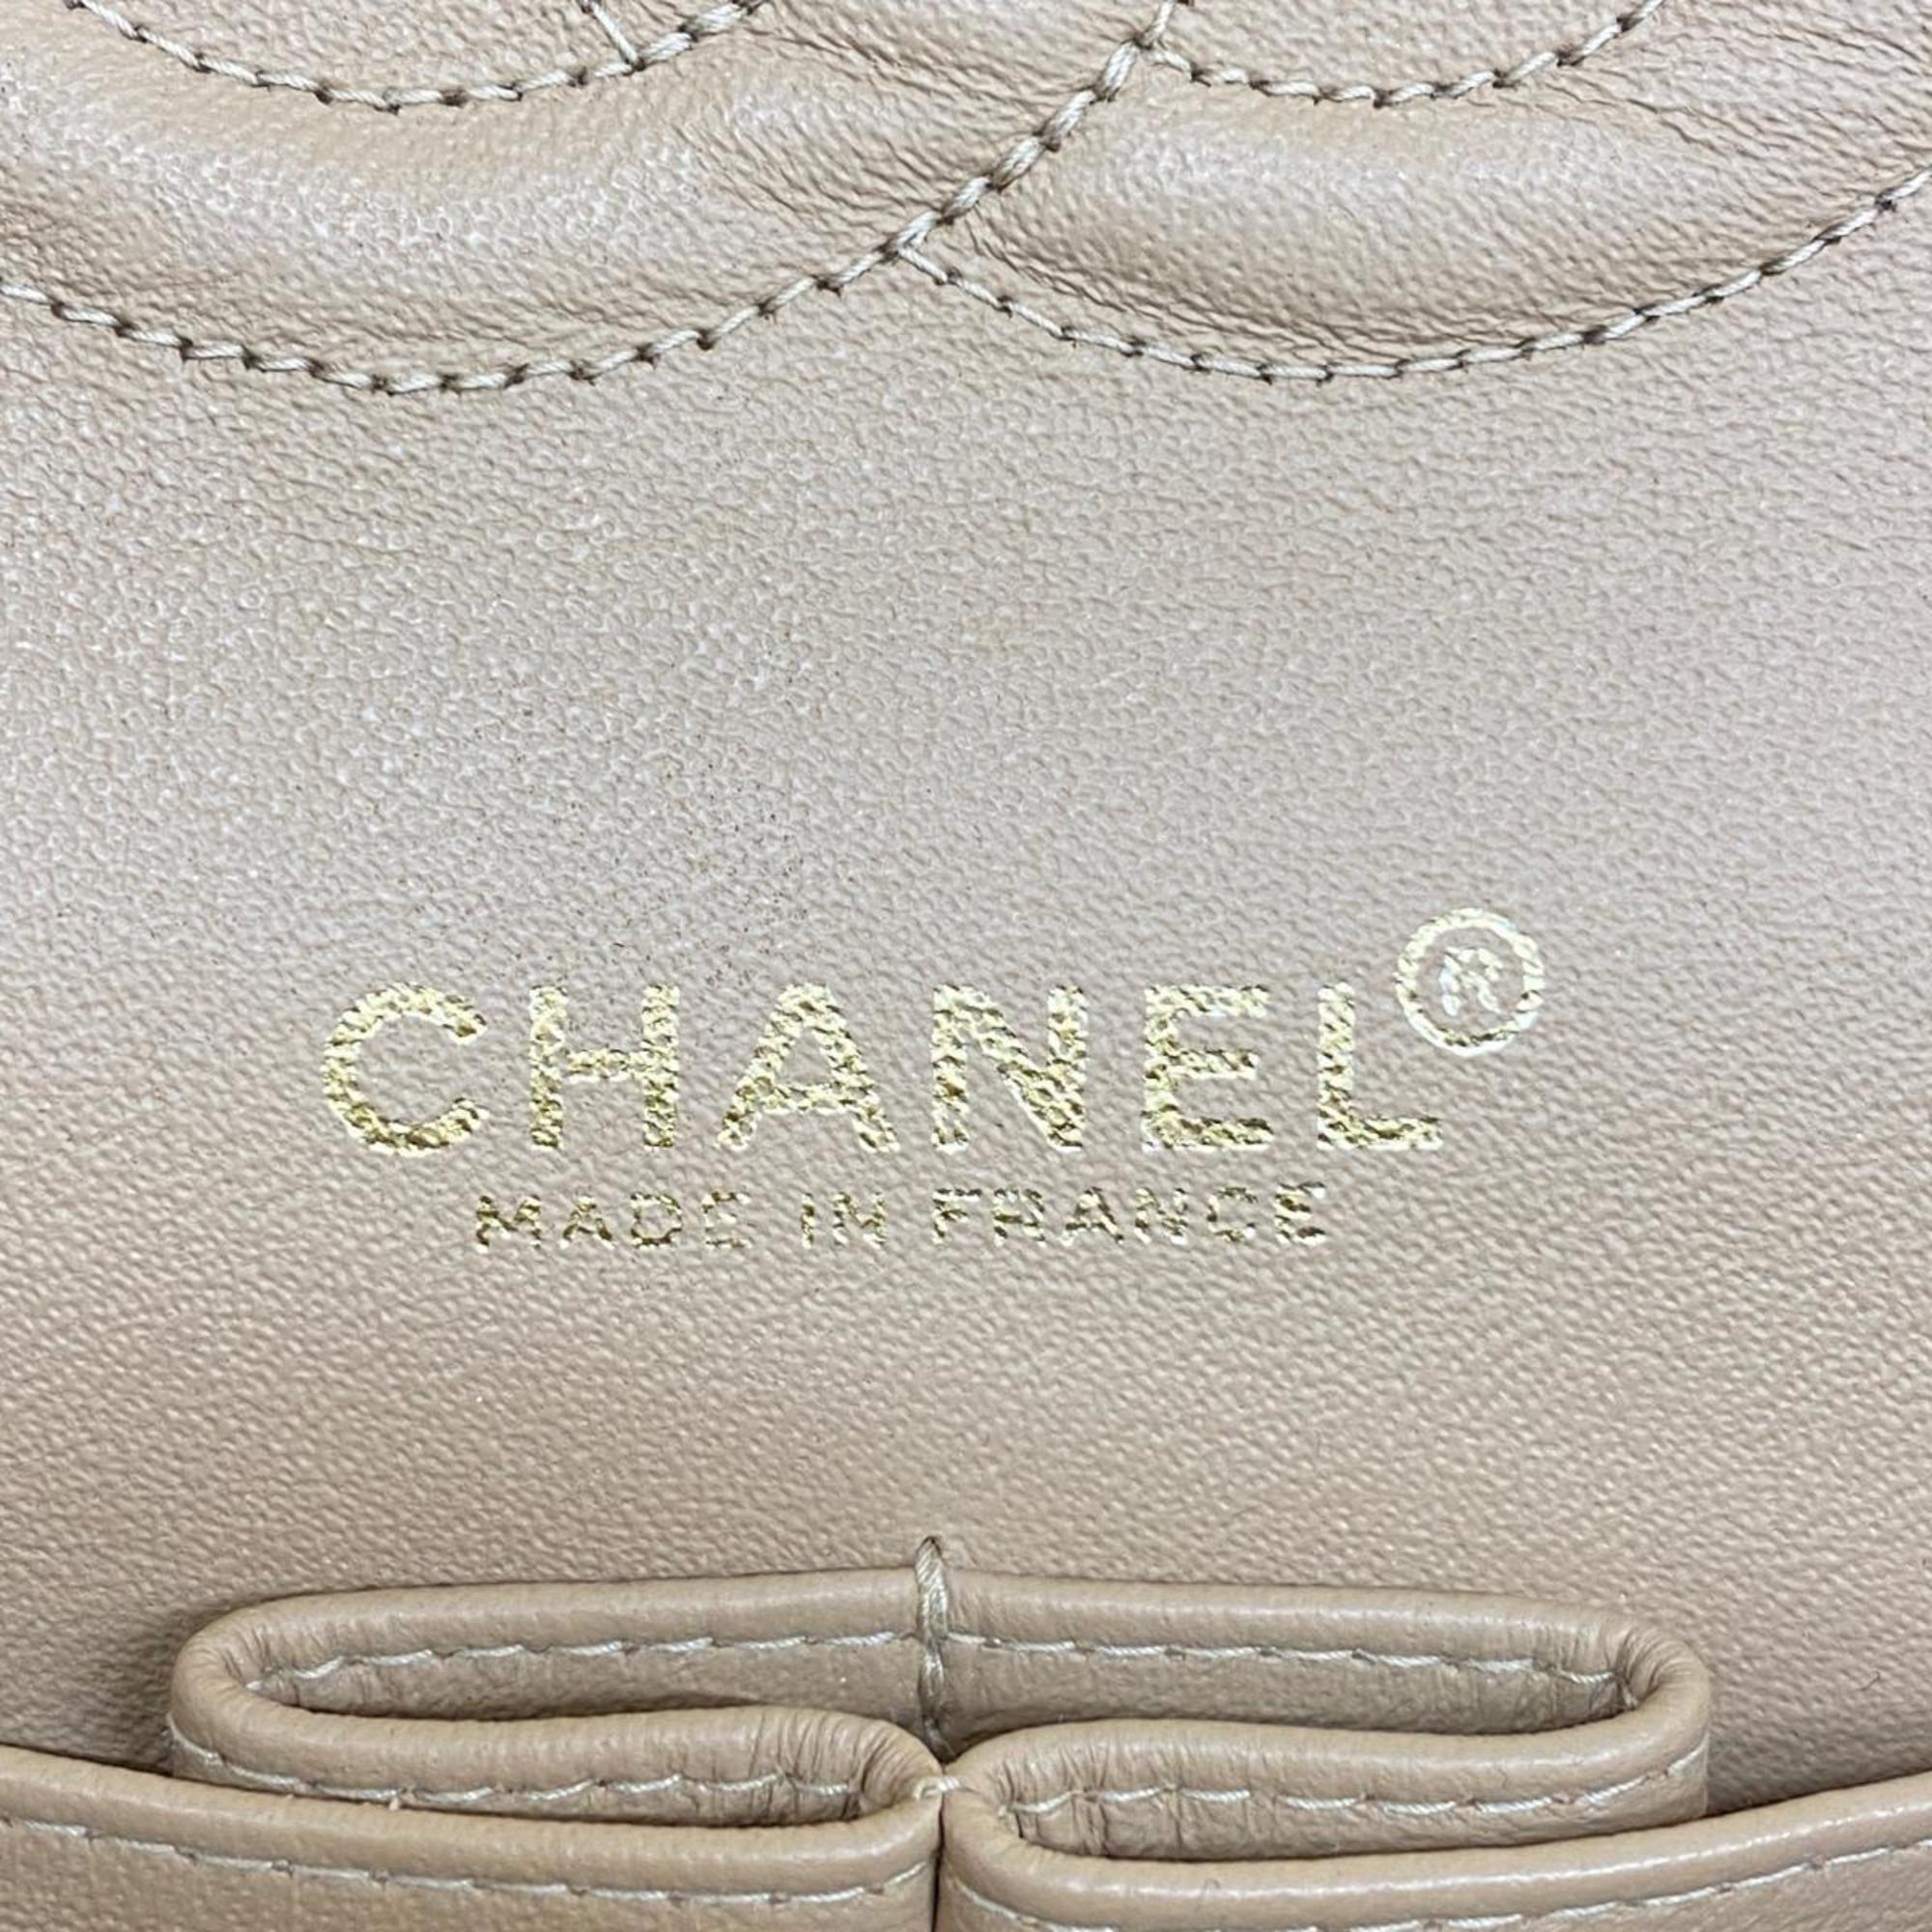 Chanel Shoulder Bag Matelasse W Flap Chain Lambskin Beige Women's